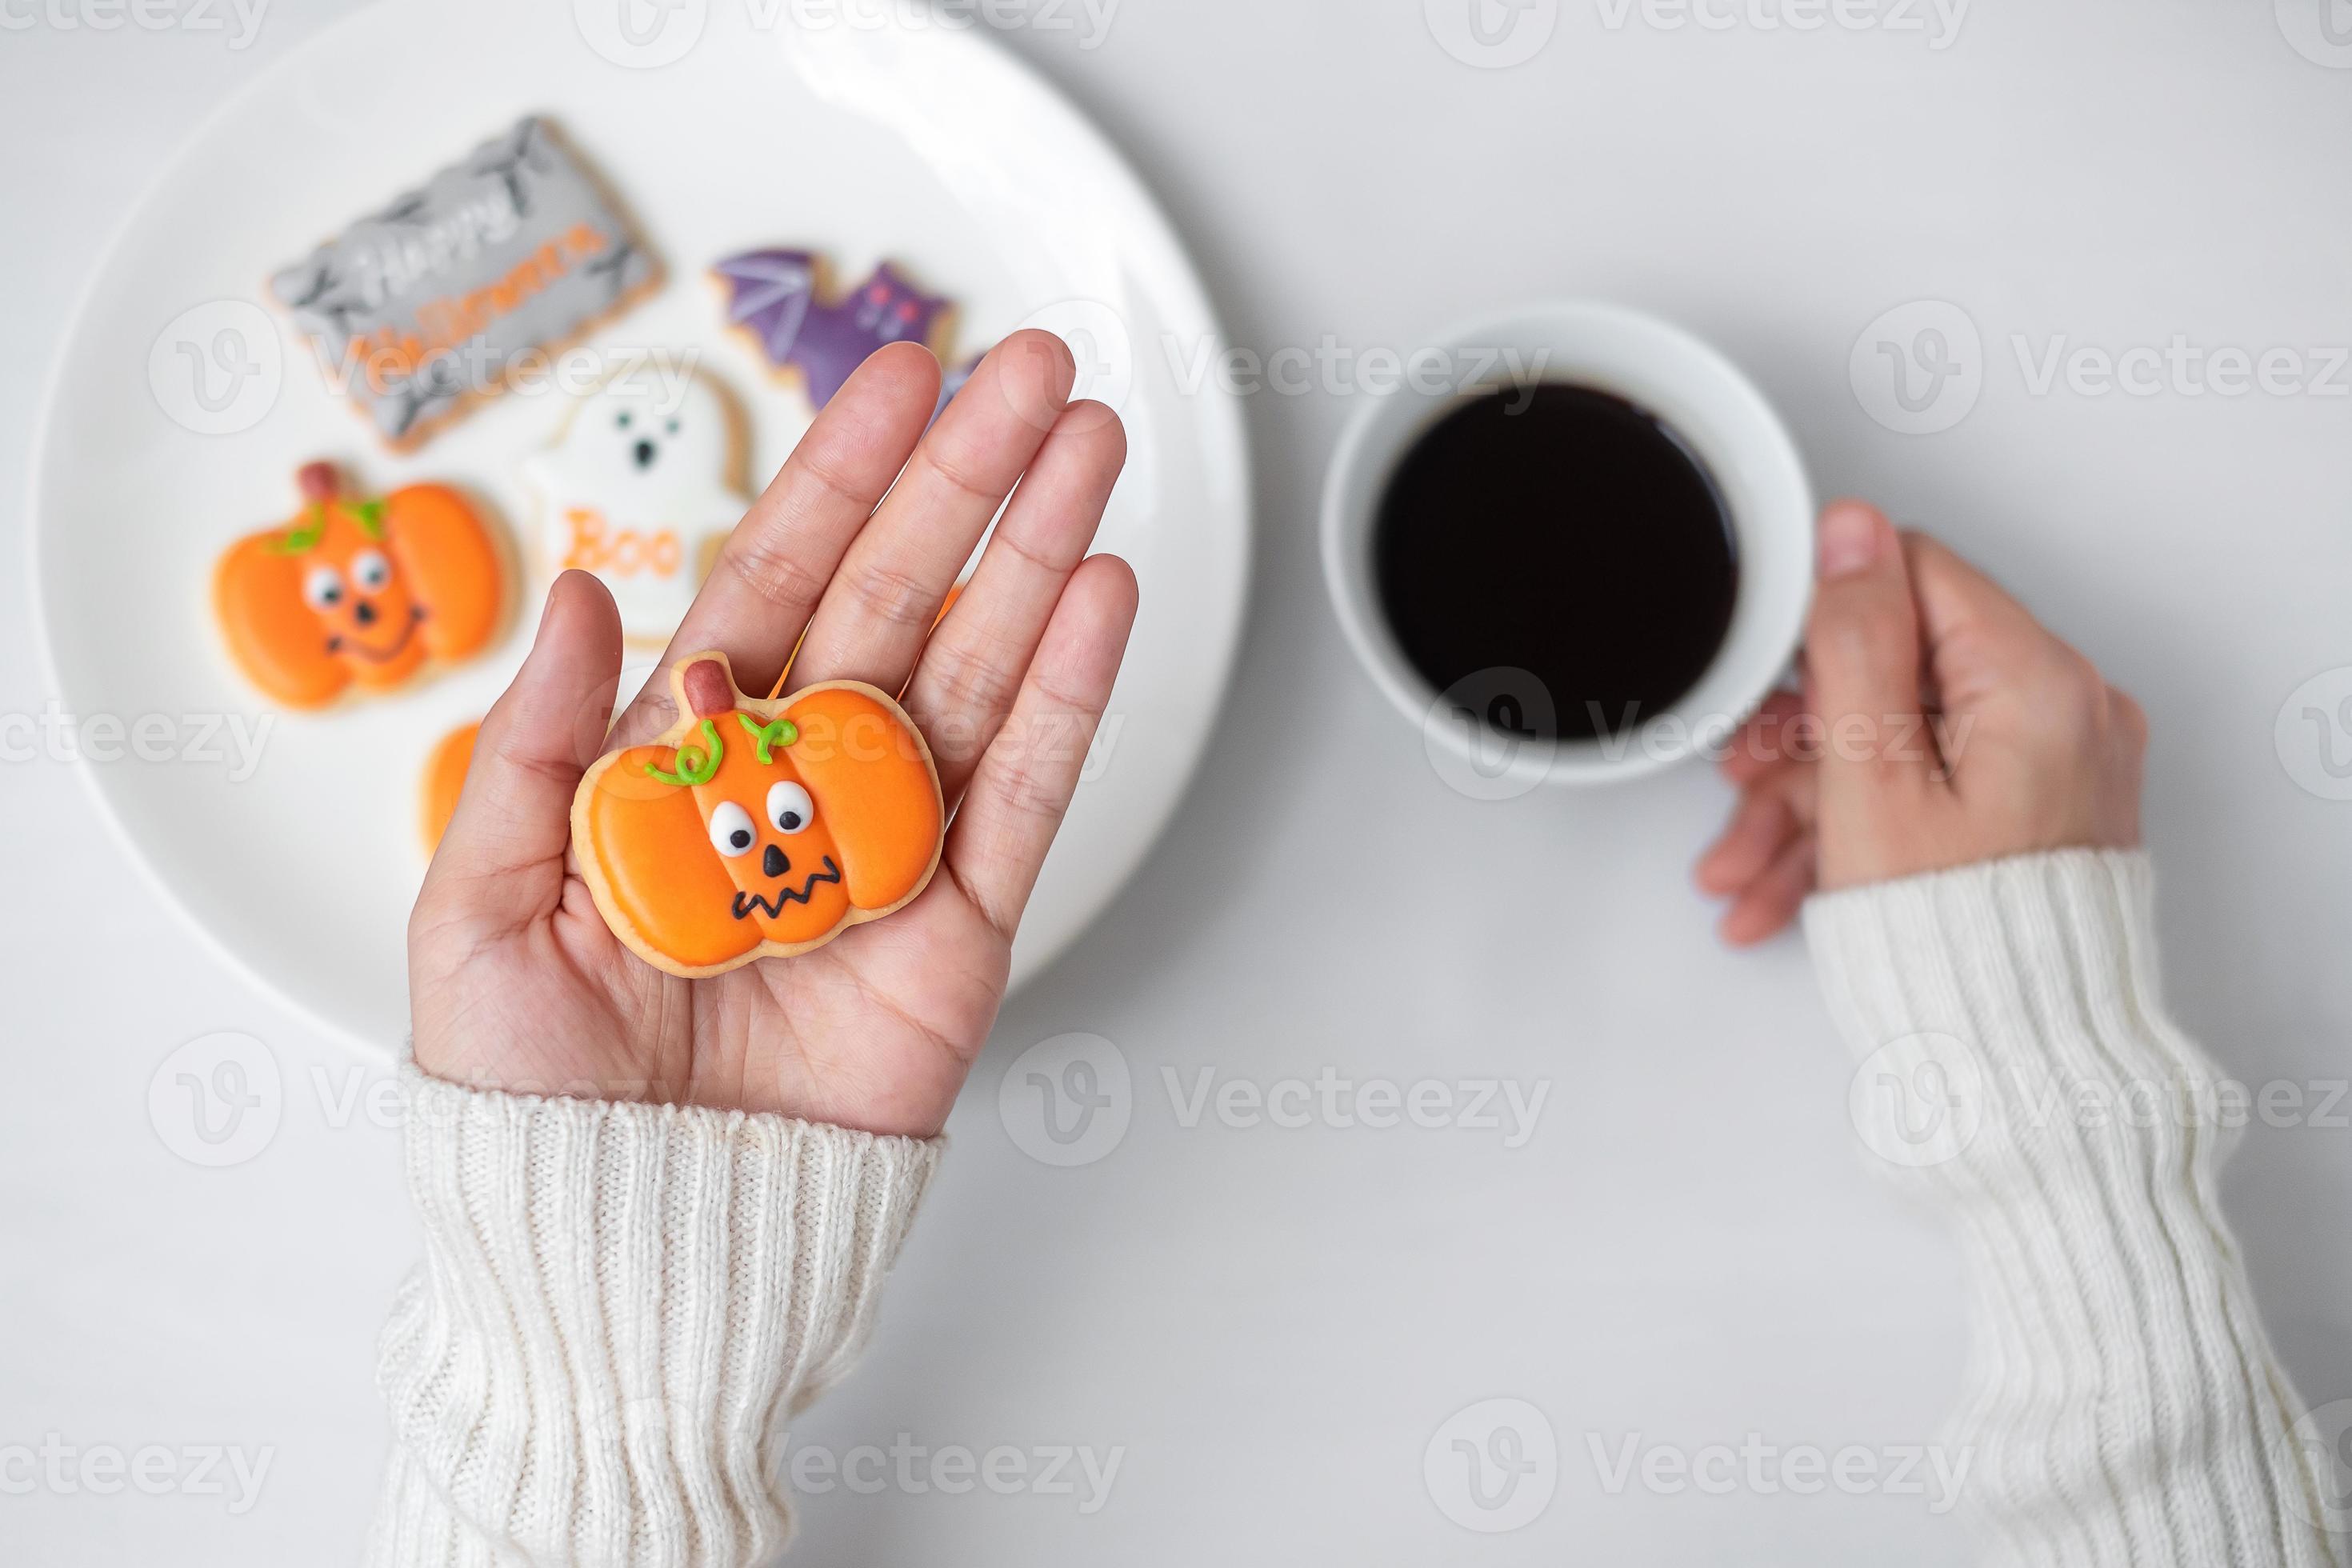 vrouw hand met grappige halloween cookie tijdens het drinken van koffie. fijne halloween-dag, truc of bedreiging, hallo oktober, herfstherfst, traditioneel, feest- en vakantieconcept foto